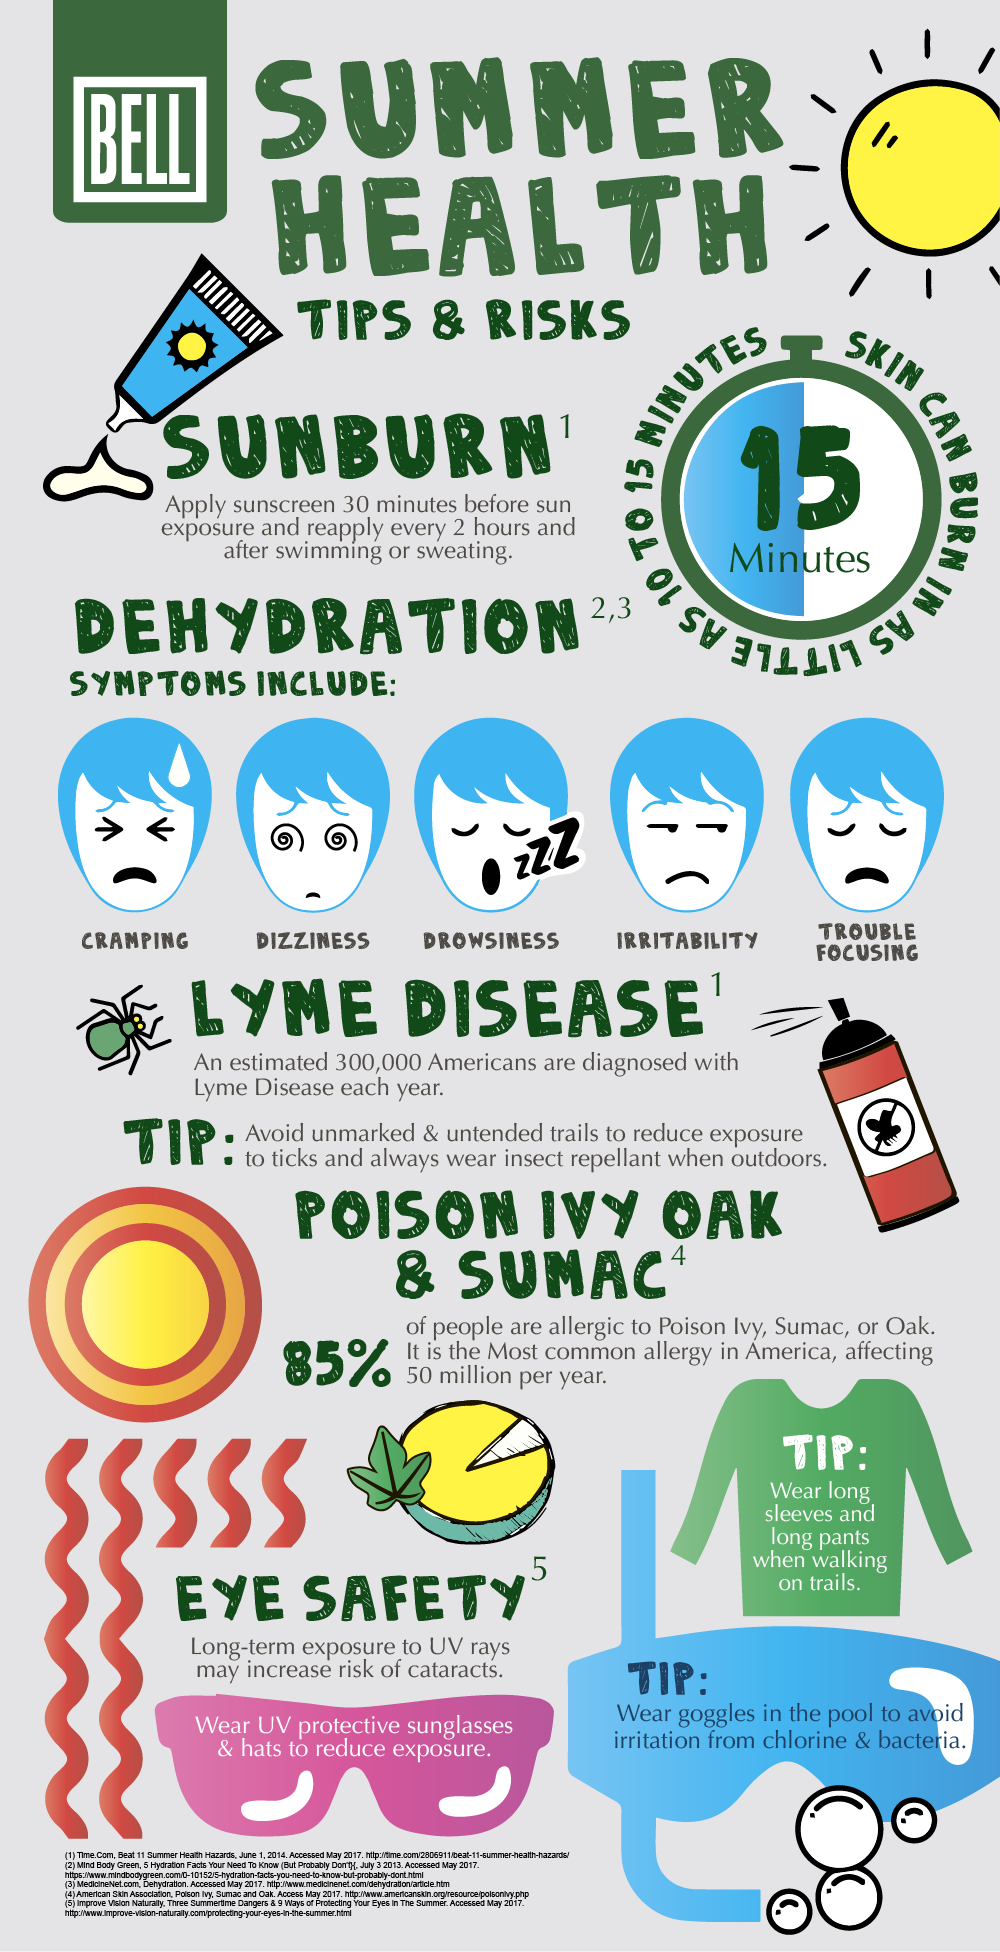 Summer Health Tips [Infographic] Bell Wellness Center